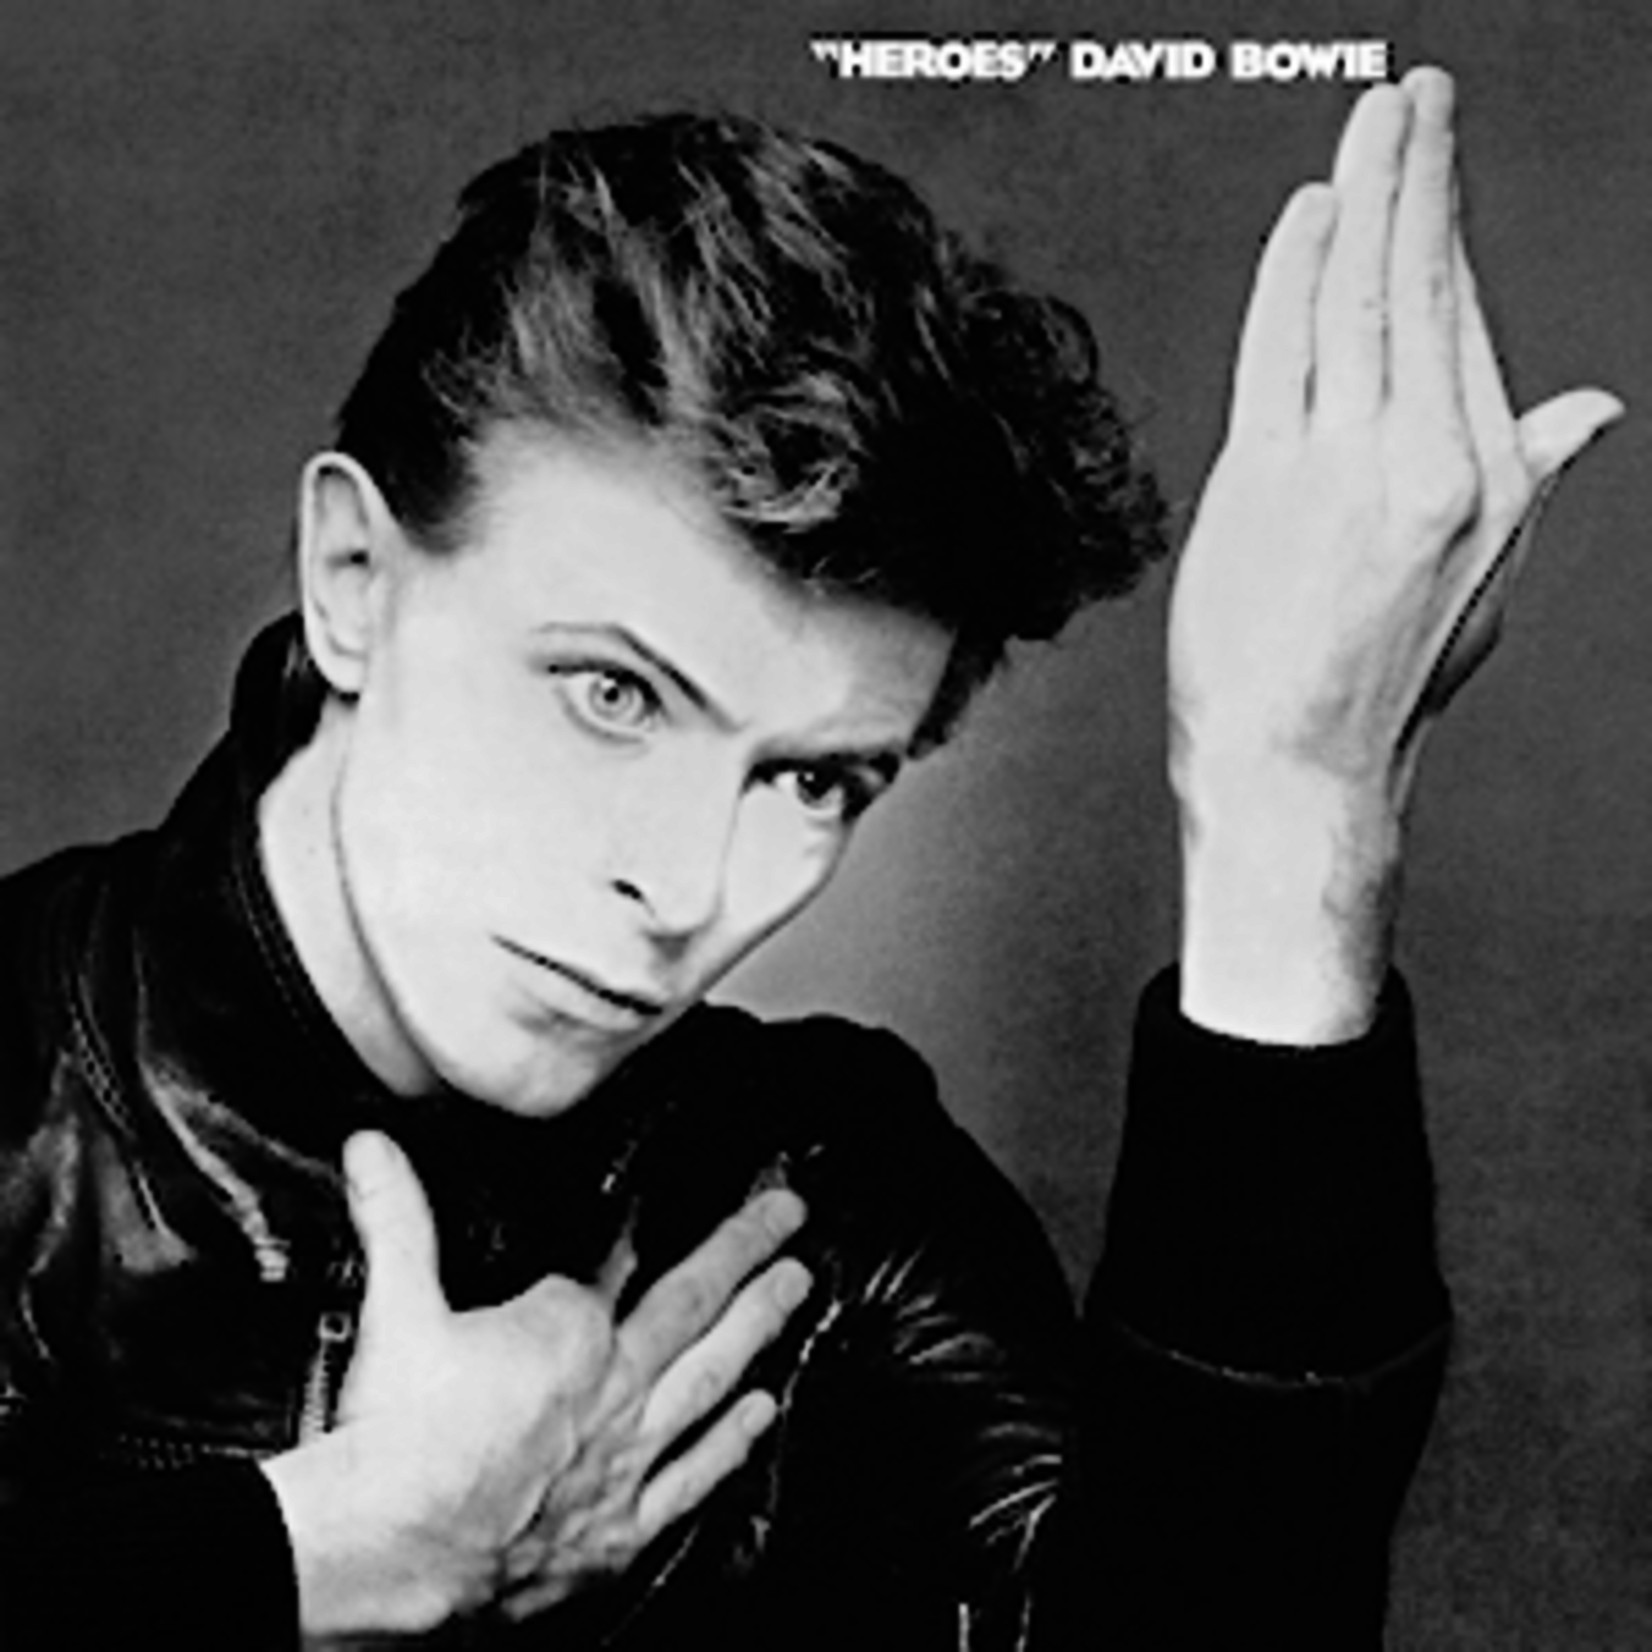 [Vintage] David Bowie - Heroes